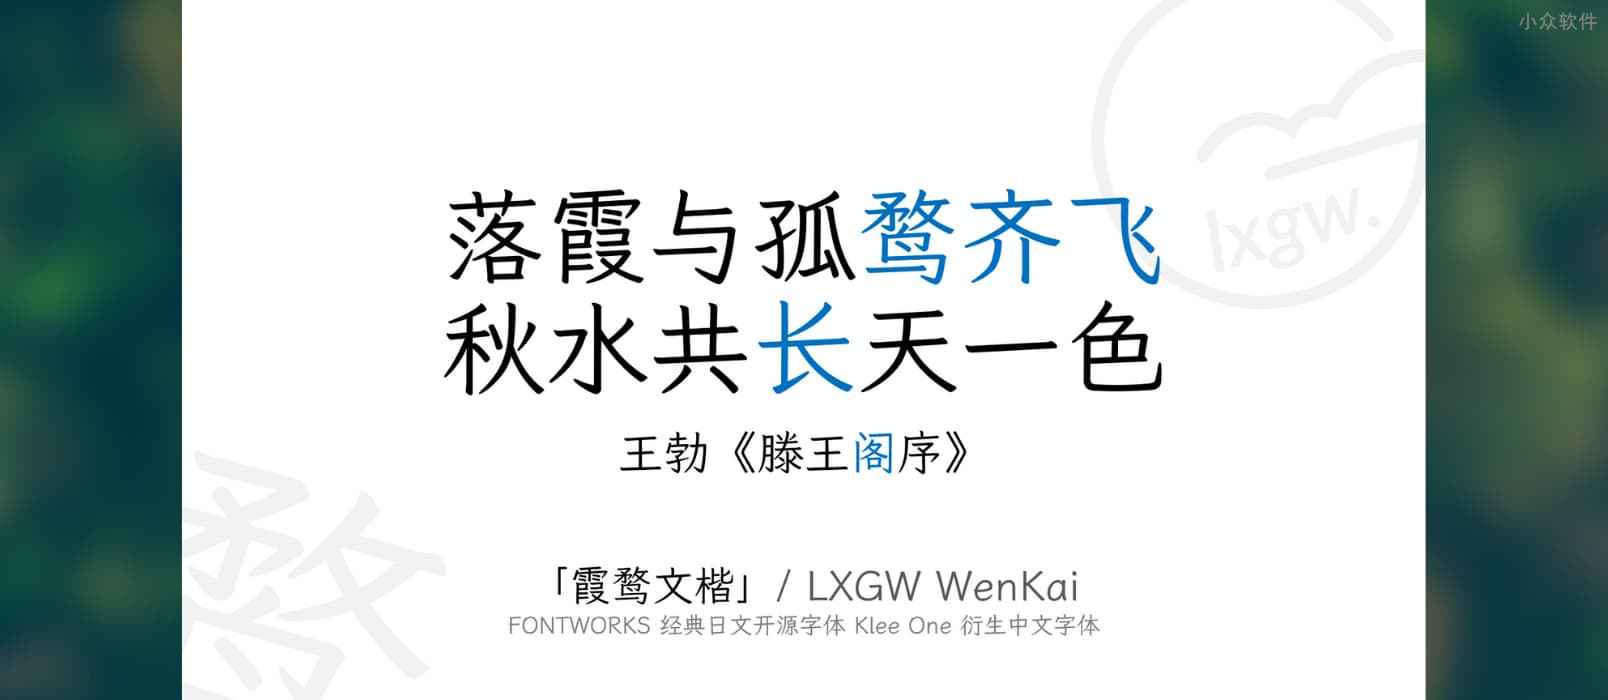 霞鹜文楷 / LXGW WenKai - 开源中文字体、免费可商用，兼仿宋和楷体特点，可读性高